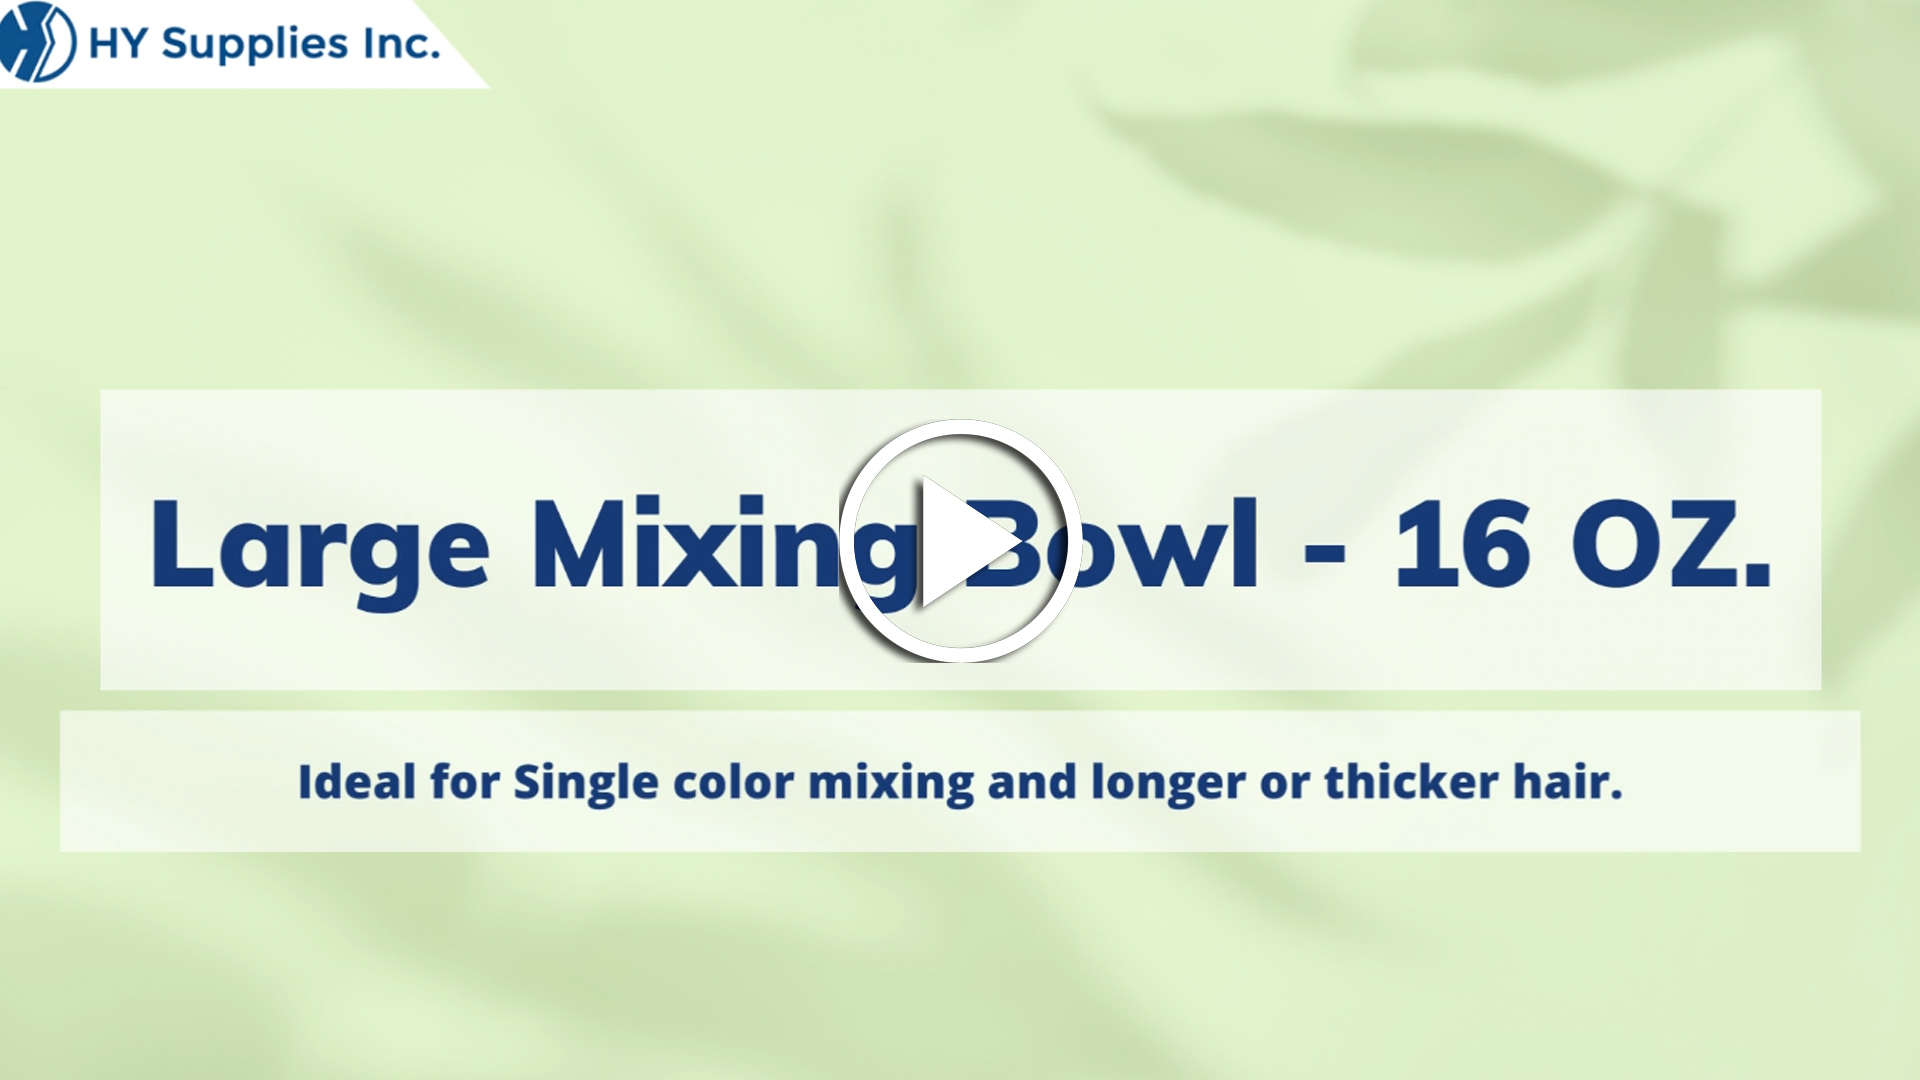 Large Mixing Bowl - 16 OZ.